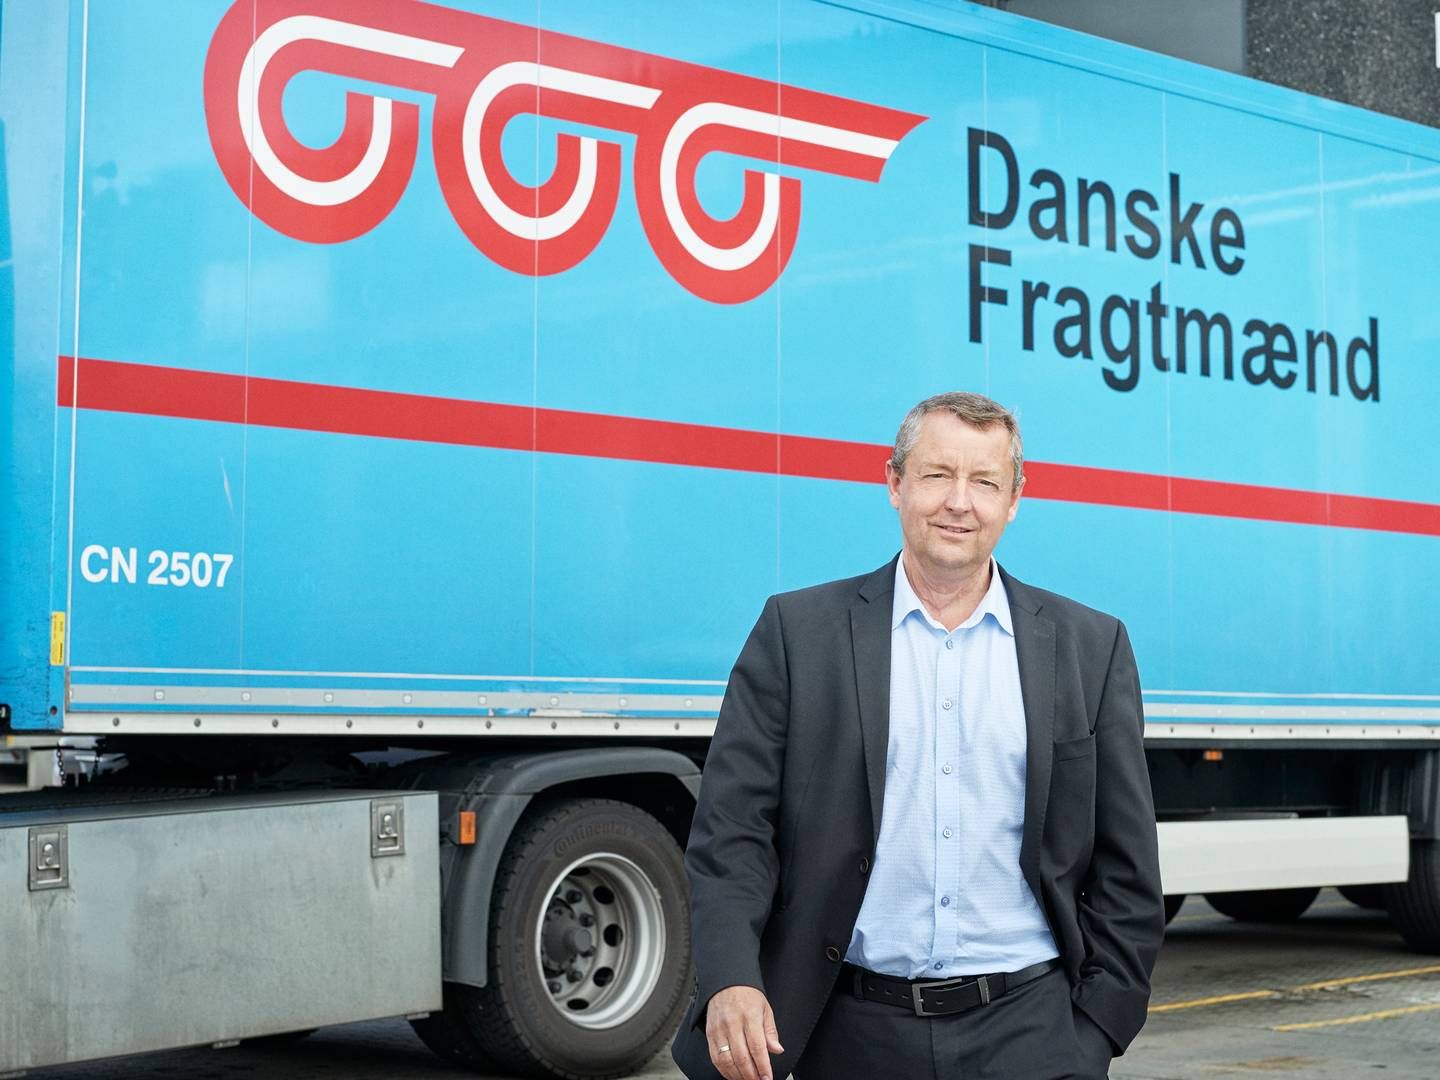 "Kunderne er stadig enormt prisfølsomme. Mere end de er følsomme over for grøn transport,” siger Jørn P. Skov, direktør for Danske Fragtmænd, til Børsen. | Foto: PR / Danske Fragtmænd